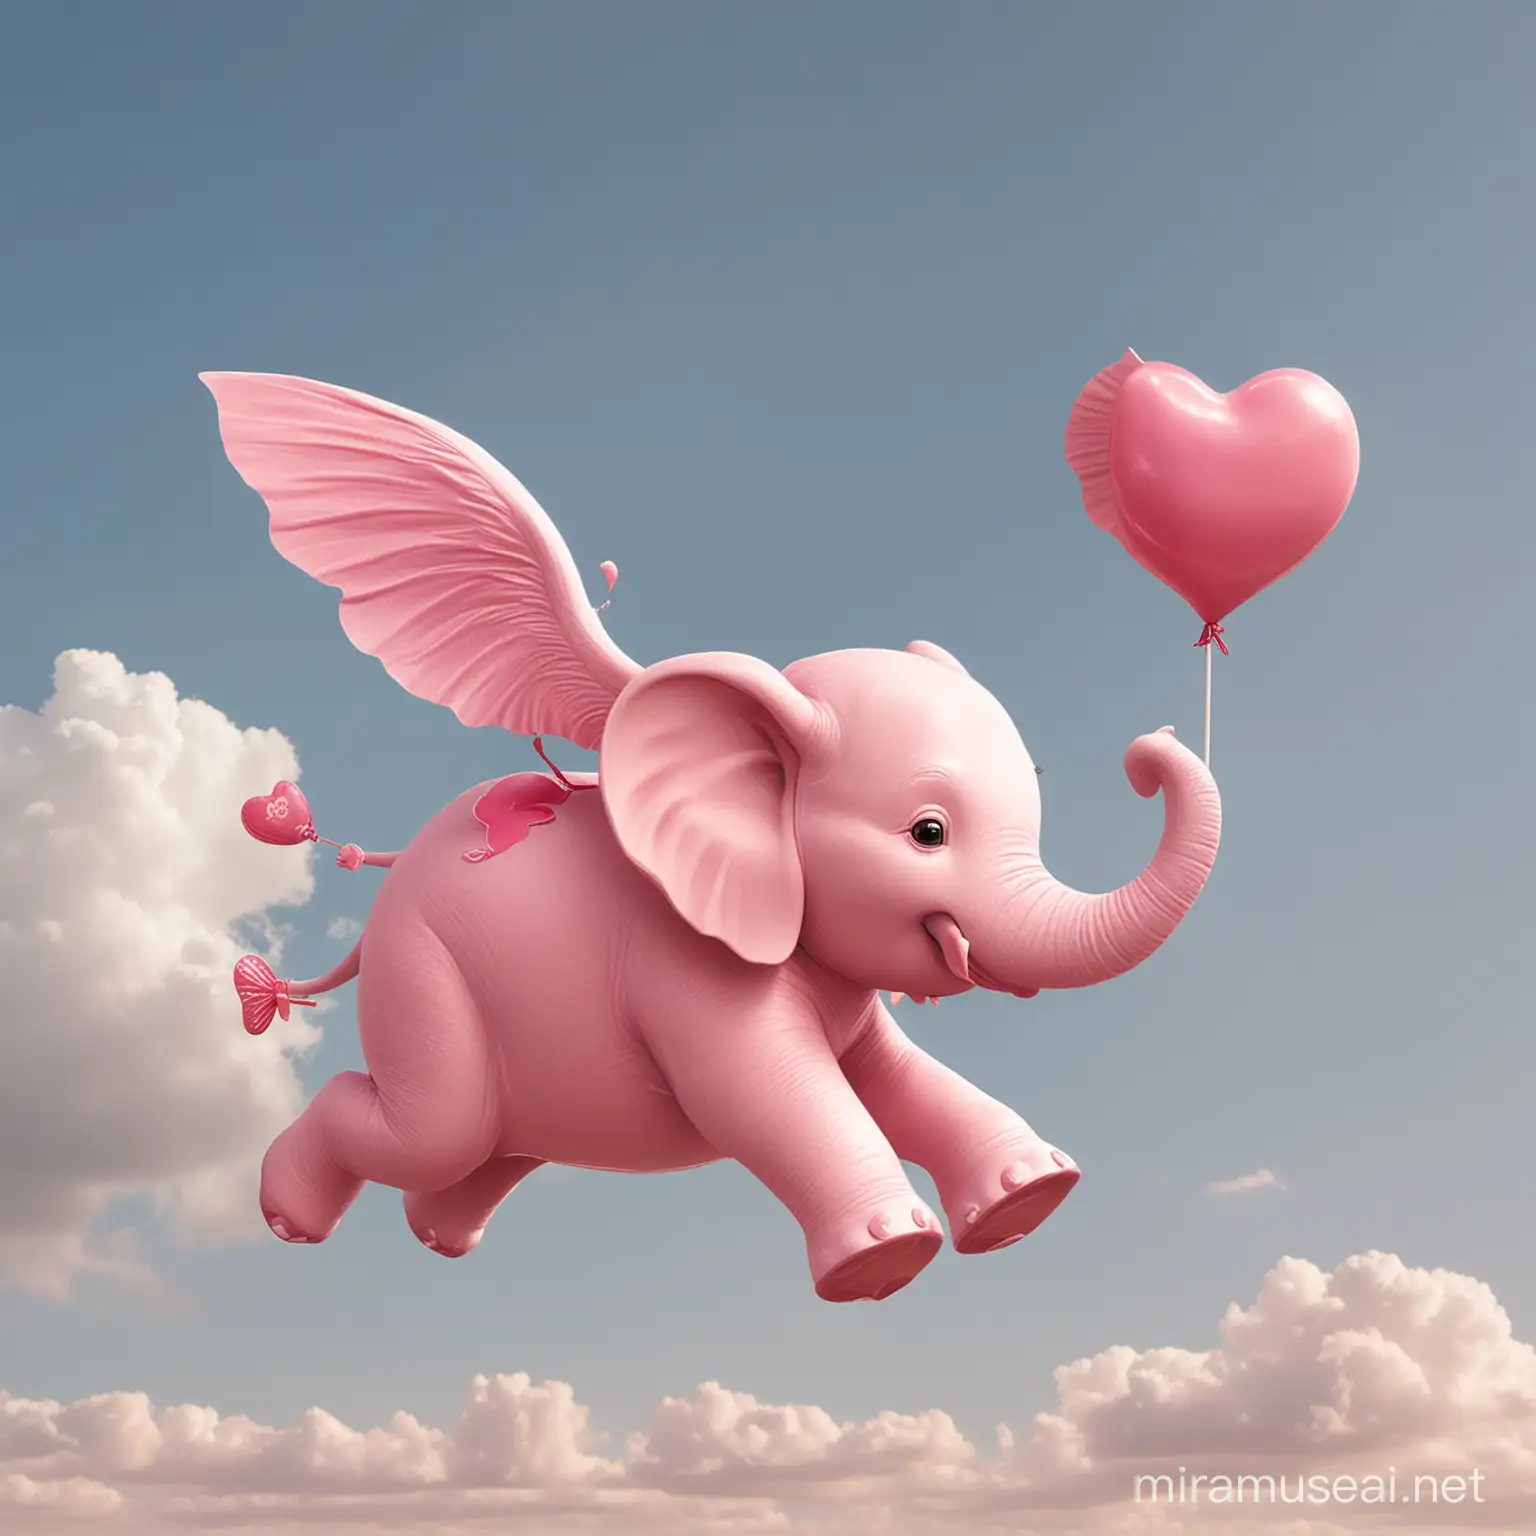 elefante rosa volando, con un niño sobre el que lleva una piruleta en forma de corazon